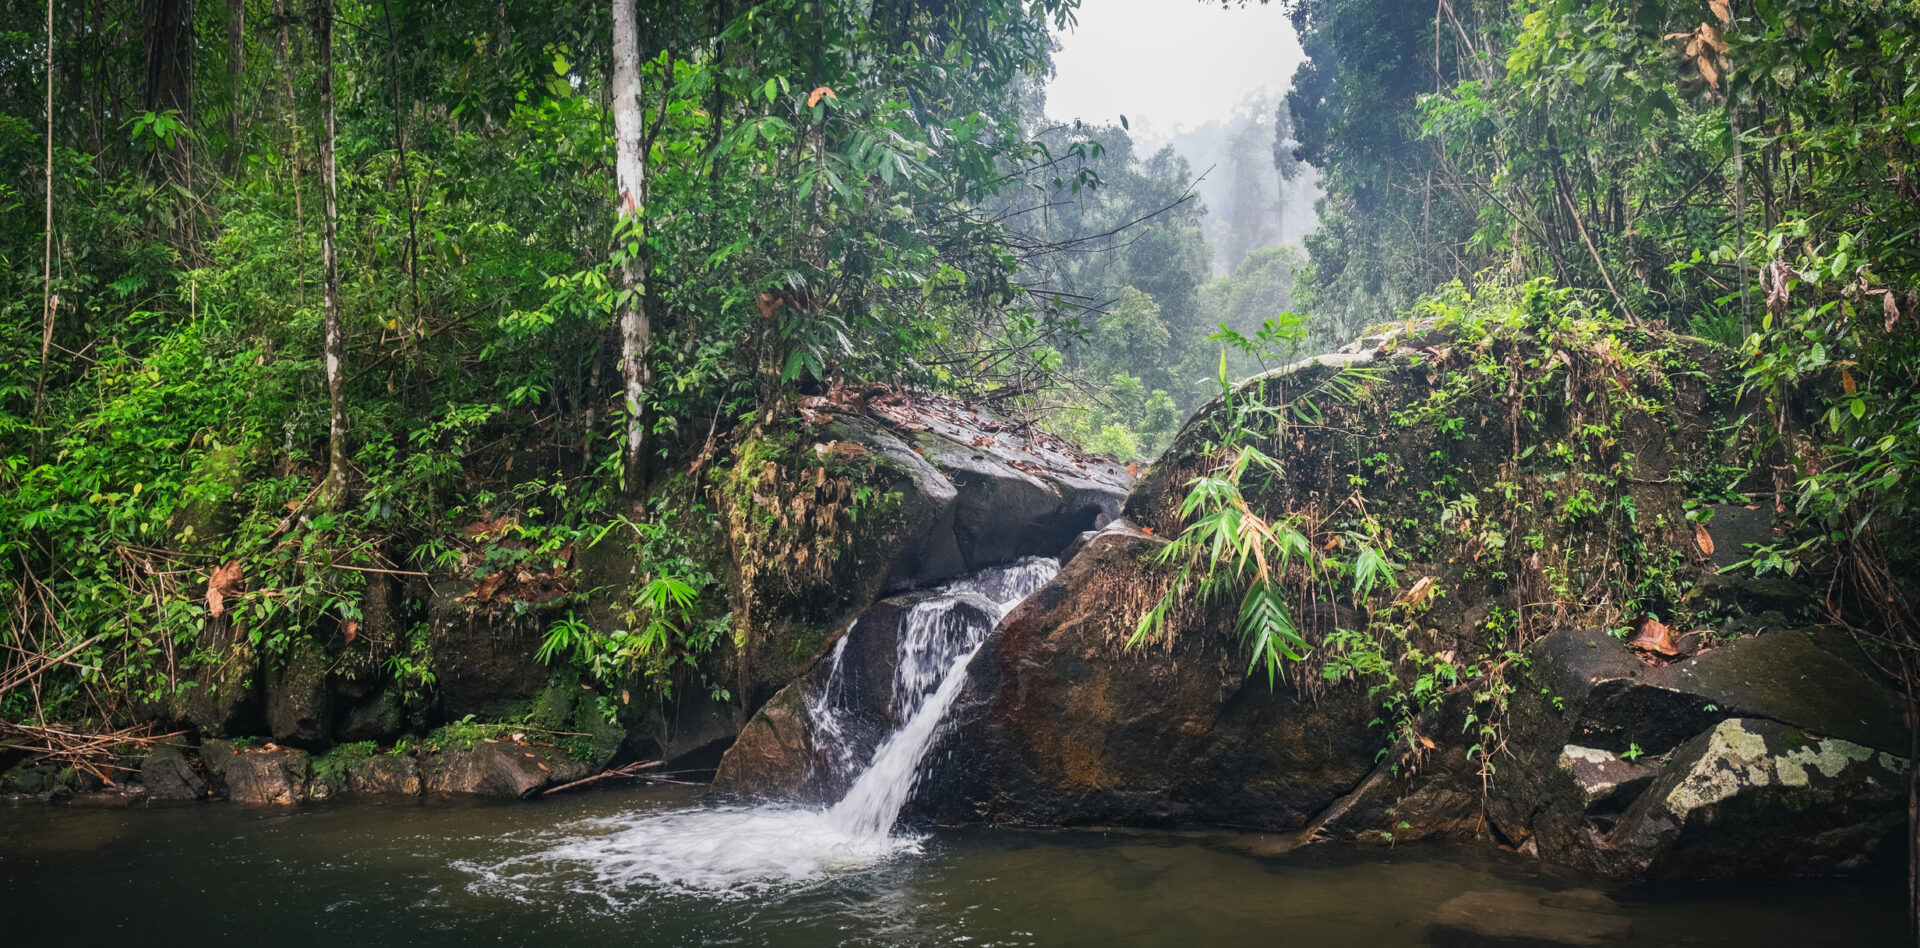 Vandfald i tropisk regnskov med levende grønt løv, autentisk ø-livet miljø.